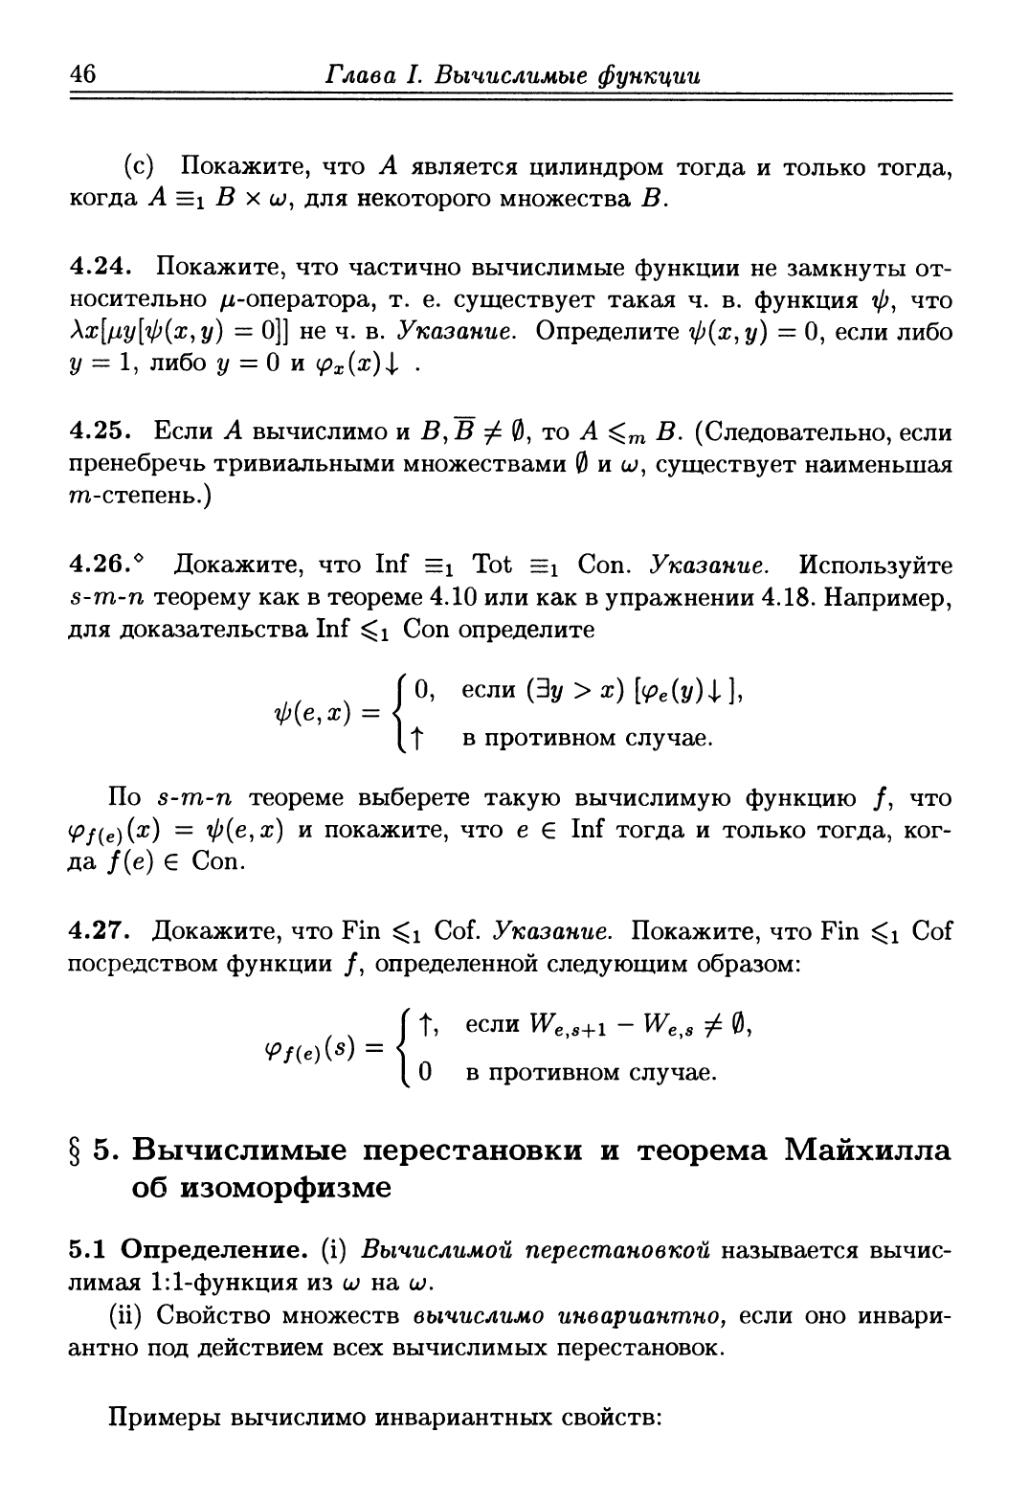 § 5. Вычислимые перестановки и теорема Майхилла об изоморфизме